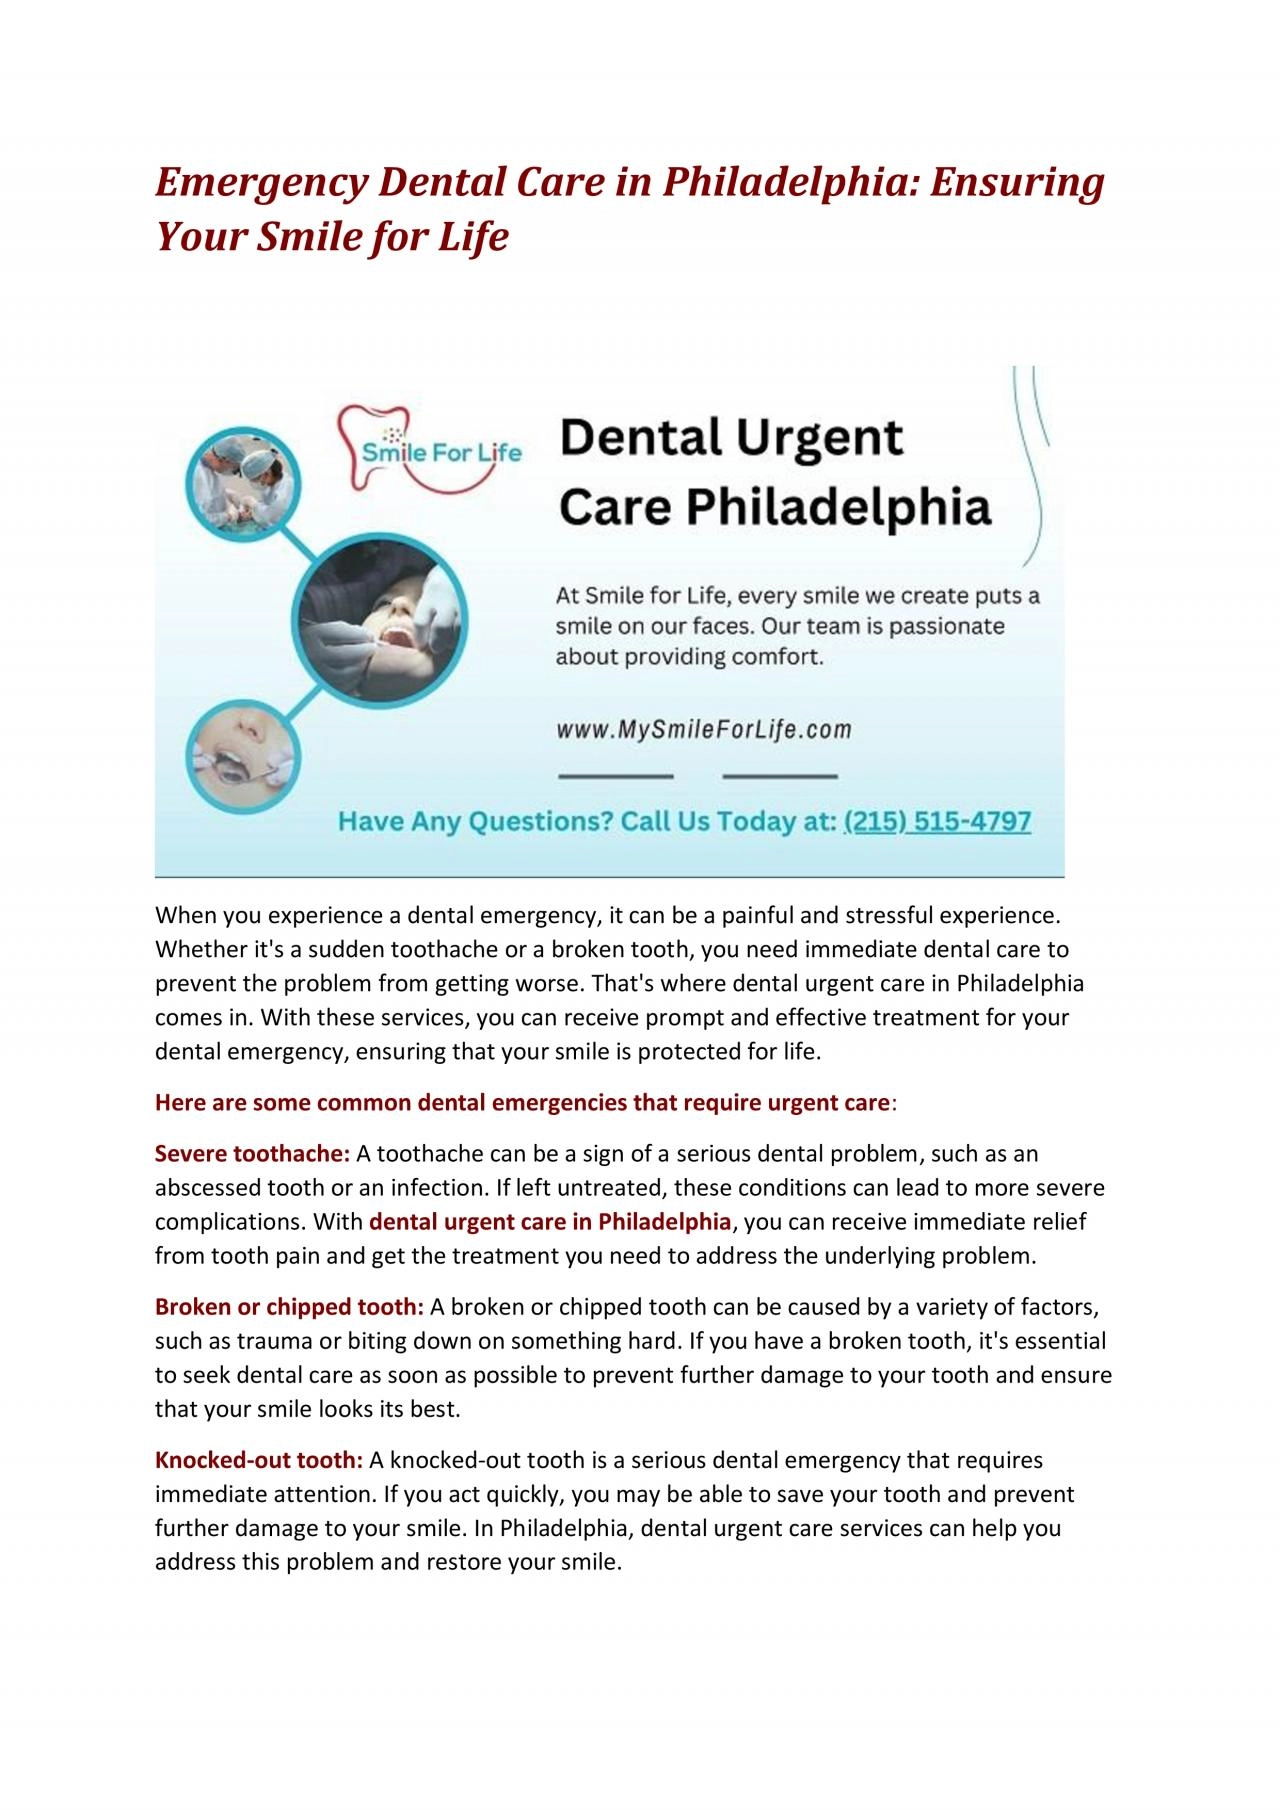 Emergency Dental Care in Philadelphia: Ensuring Your Smile for Life